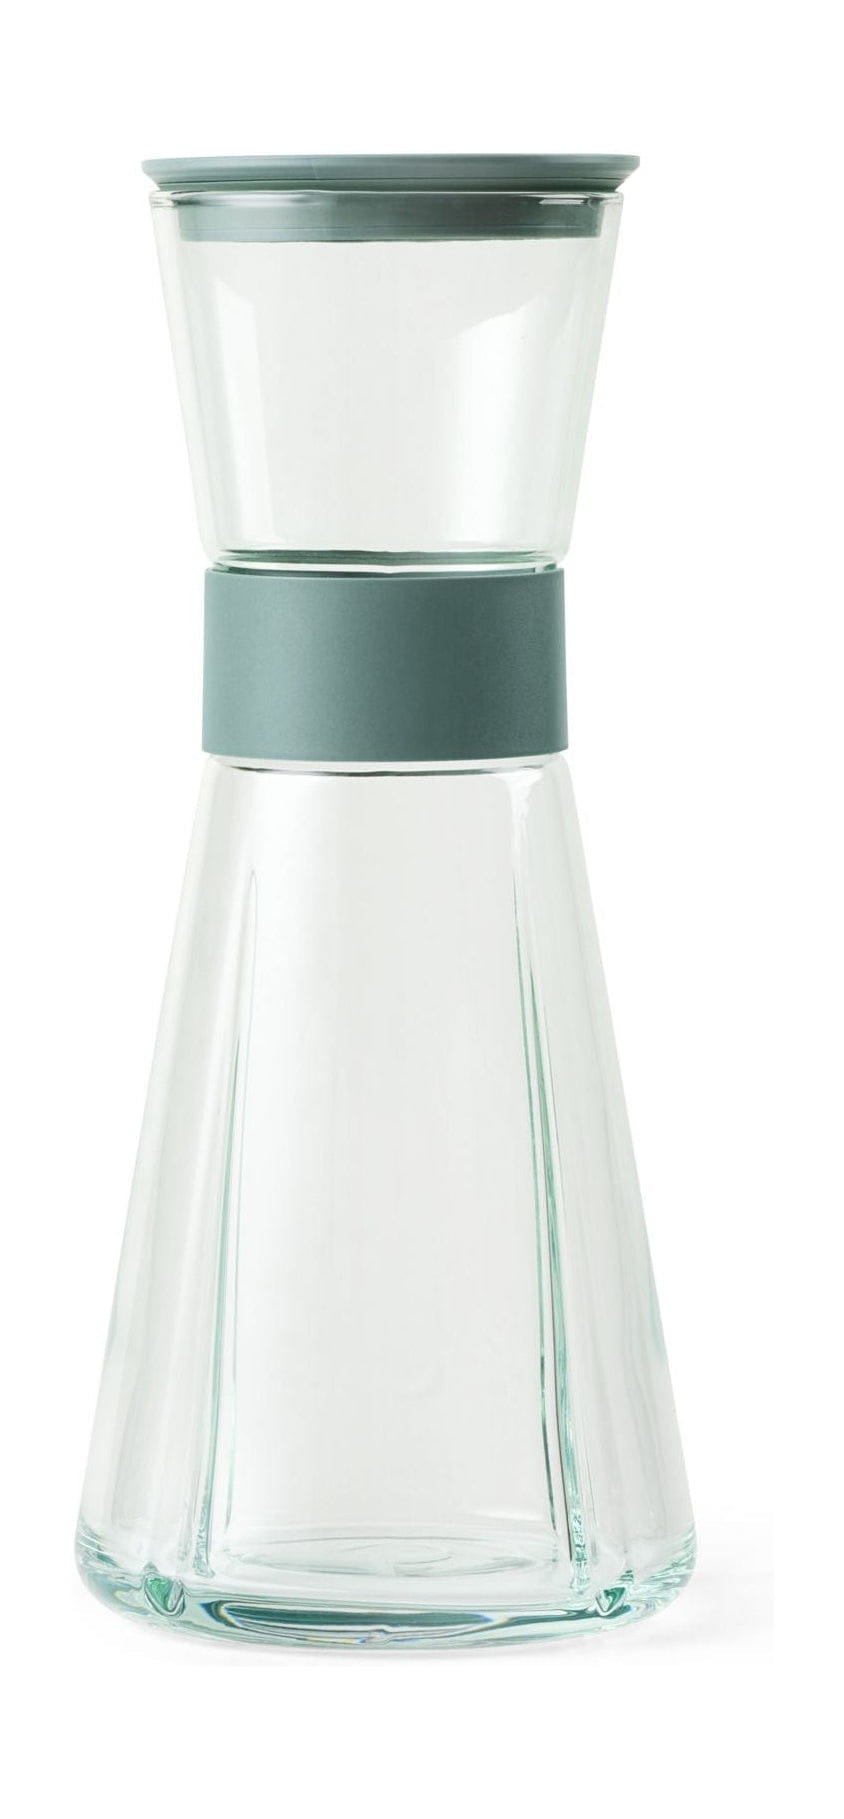 Rosendahl GC Recycled Vandkaraffel 900 ml, Klar Grøn